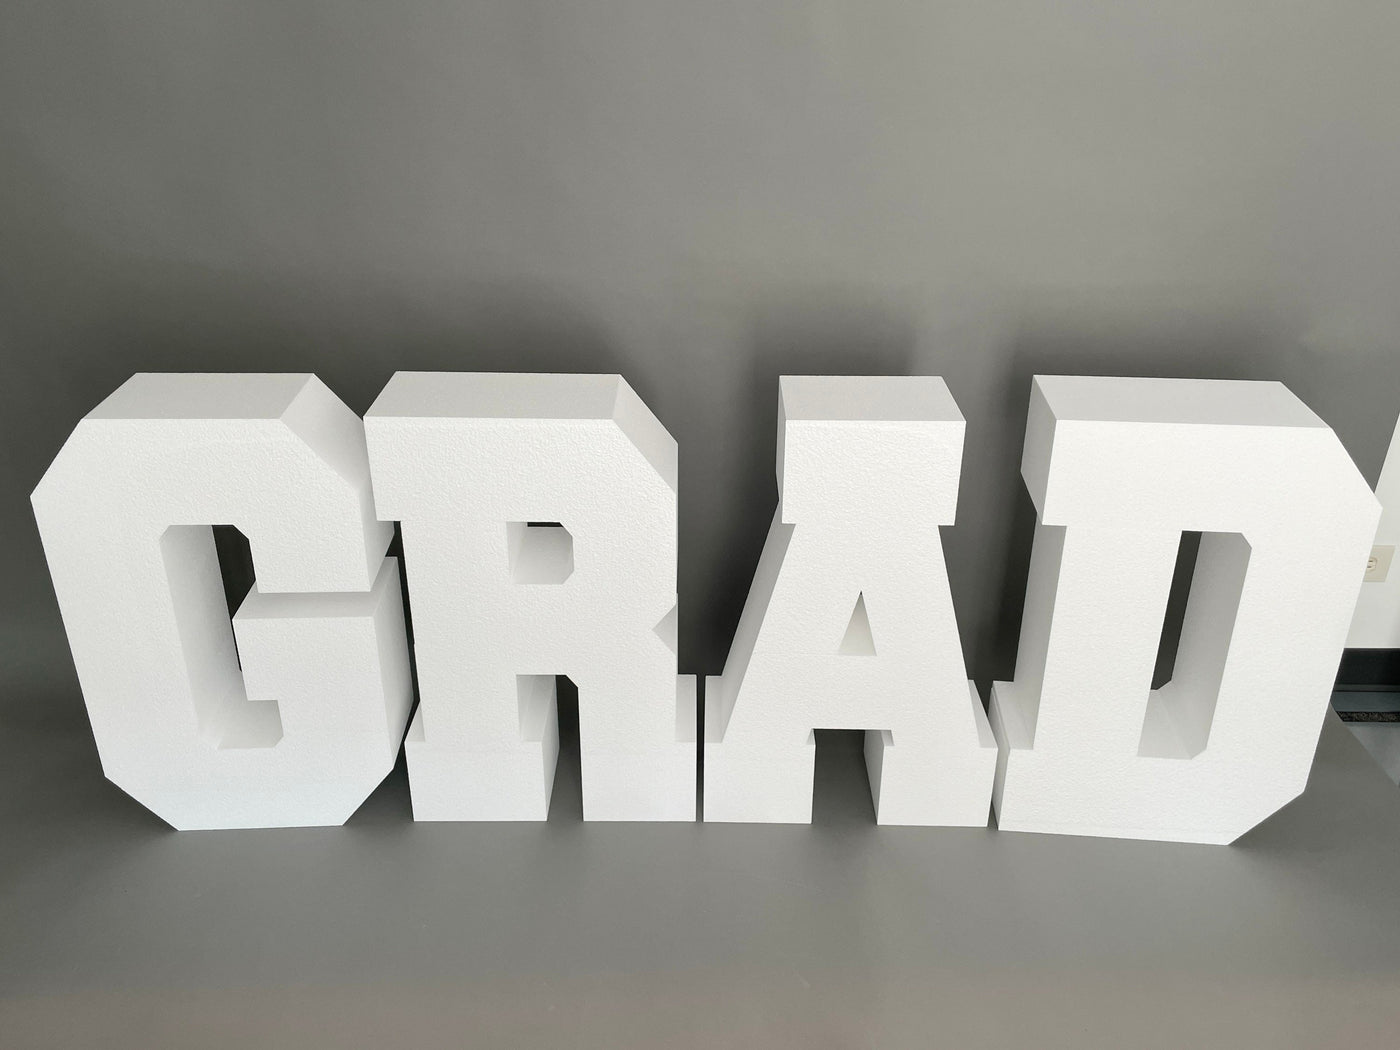 Large GRAD Table Base Foam Letters | Graduation Decor | Cake Table | Party Decor